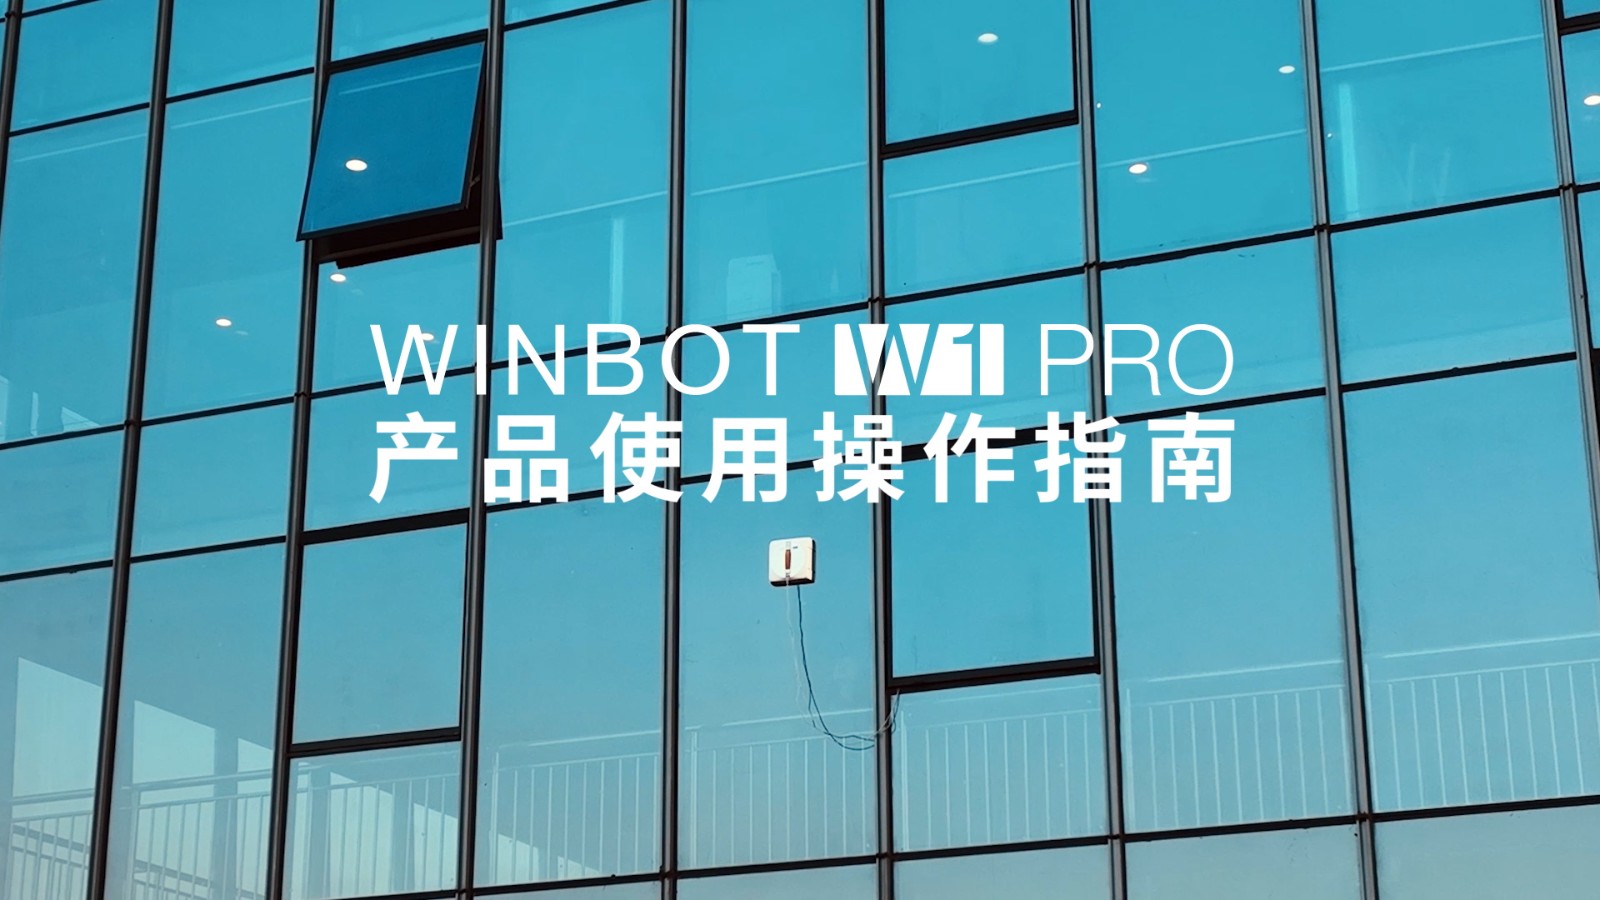 WINBOT W1 PRO 产品使用操作指南